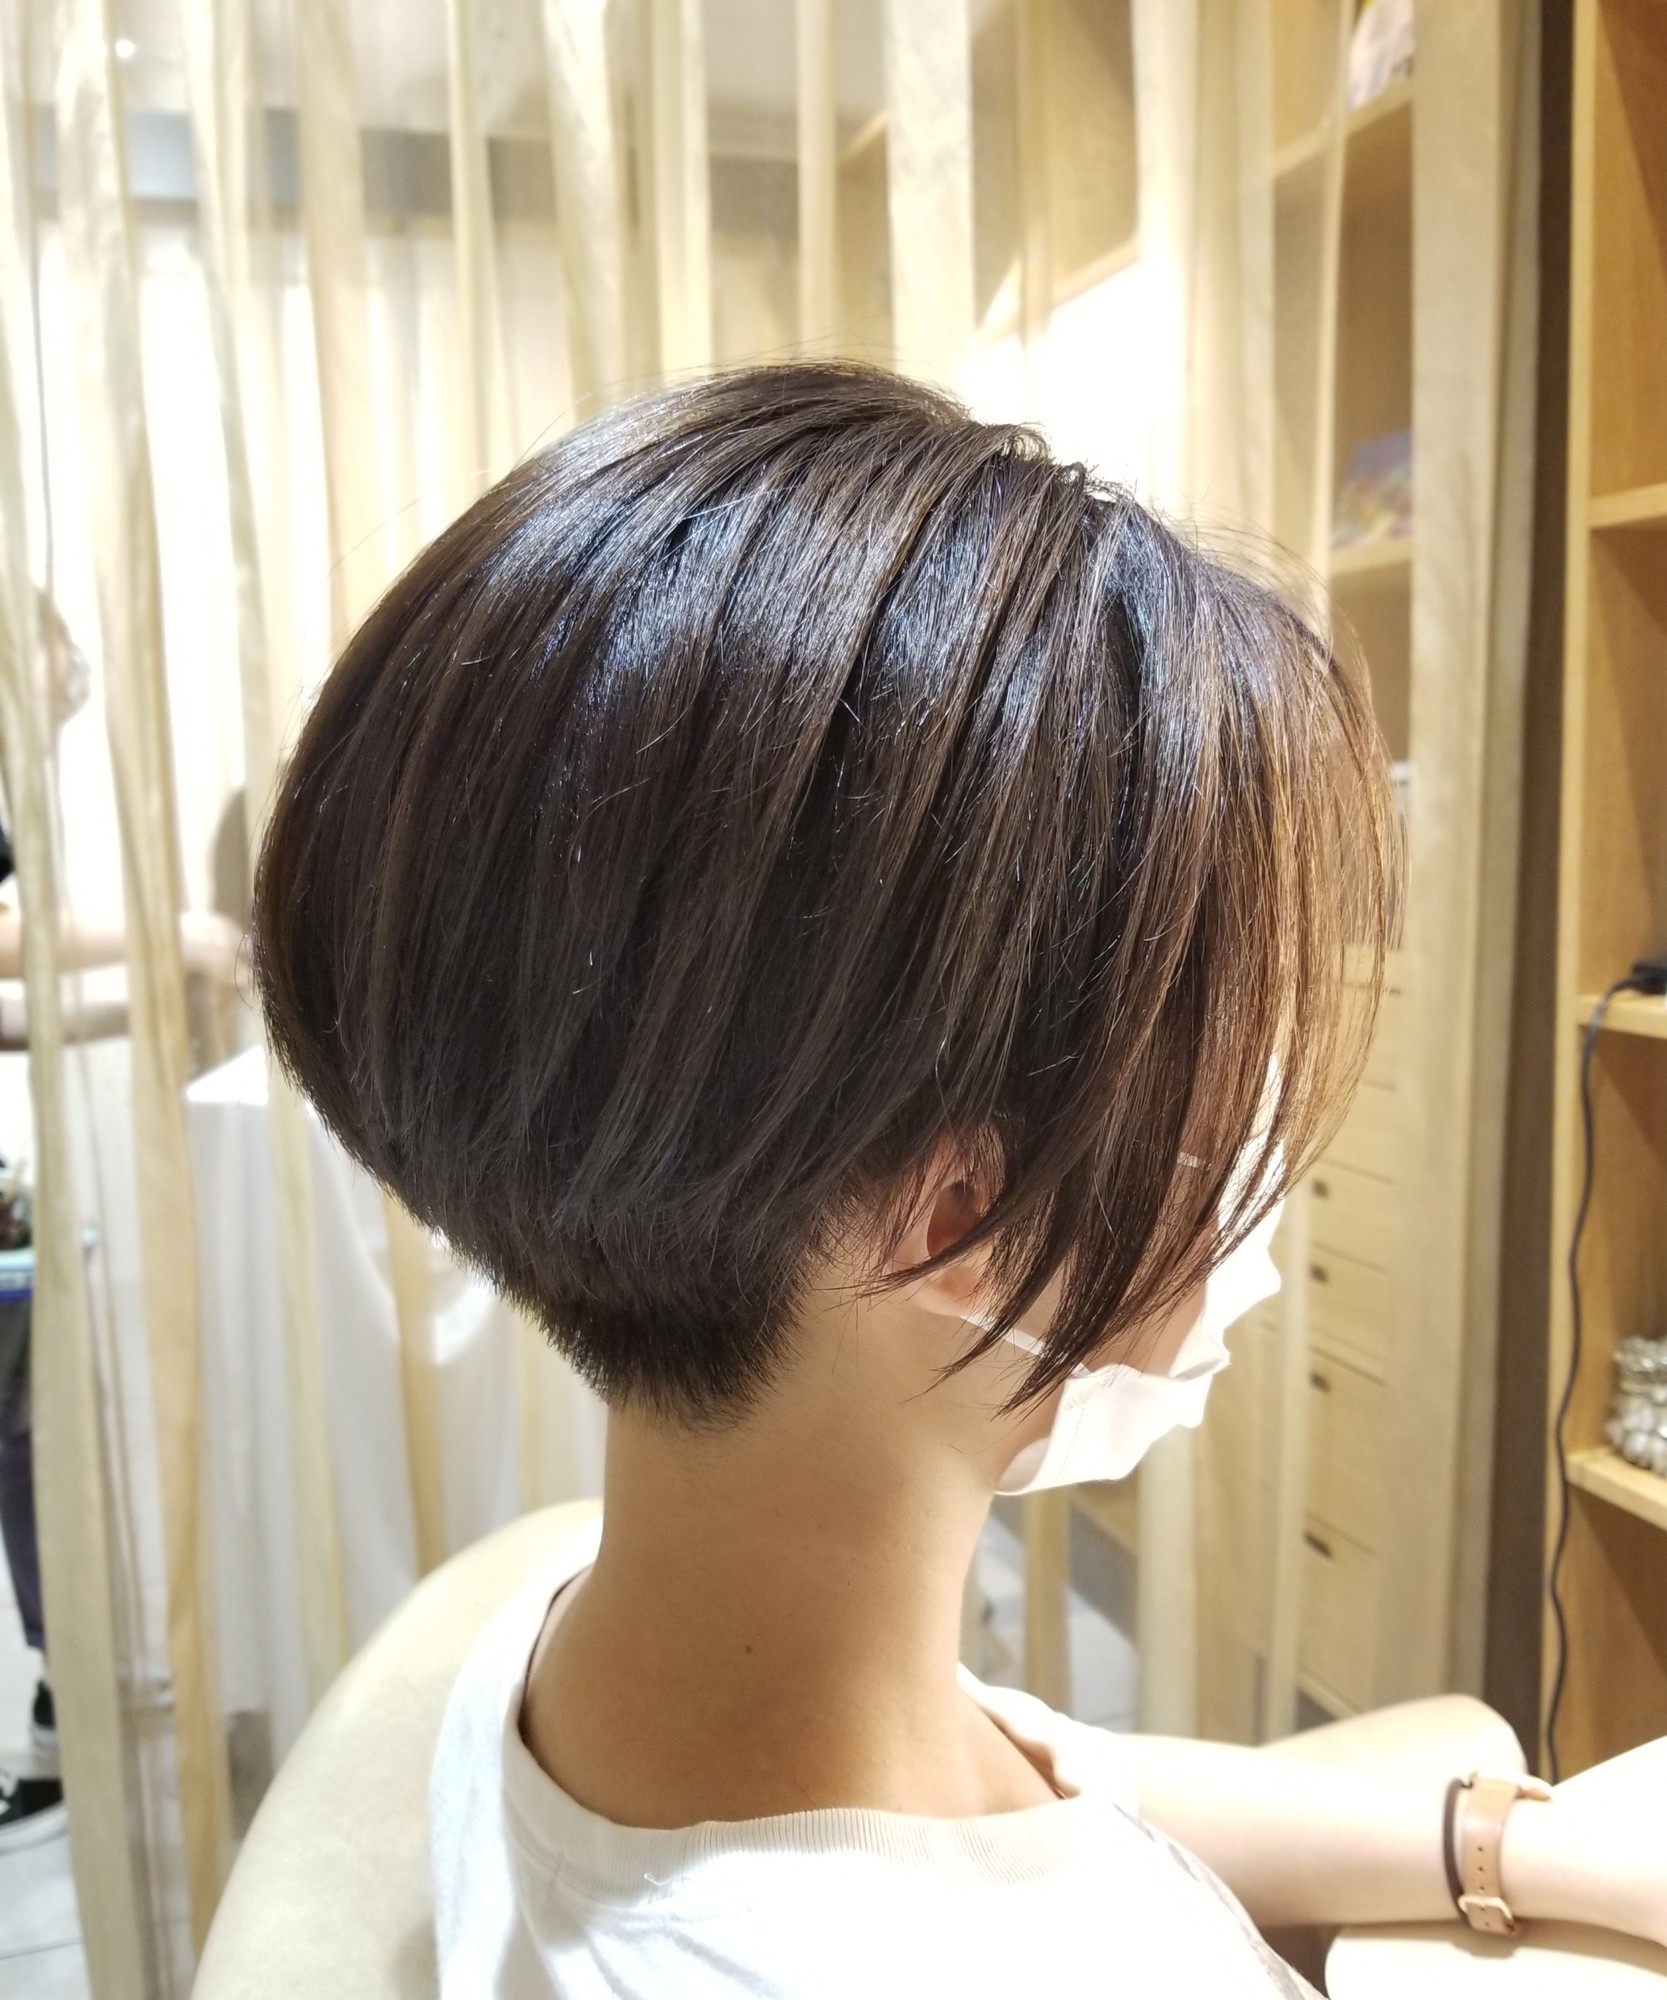 刈り上げ女子 あり なし 神戸で人気の美容院パシフィックダズール公式webサイト 西区 垂水区